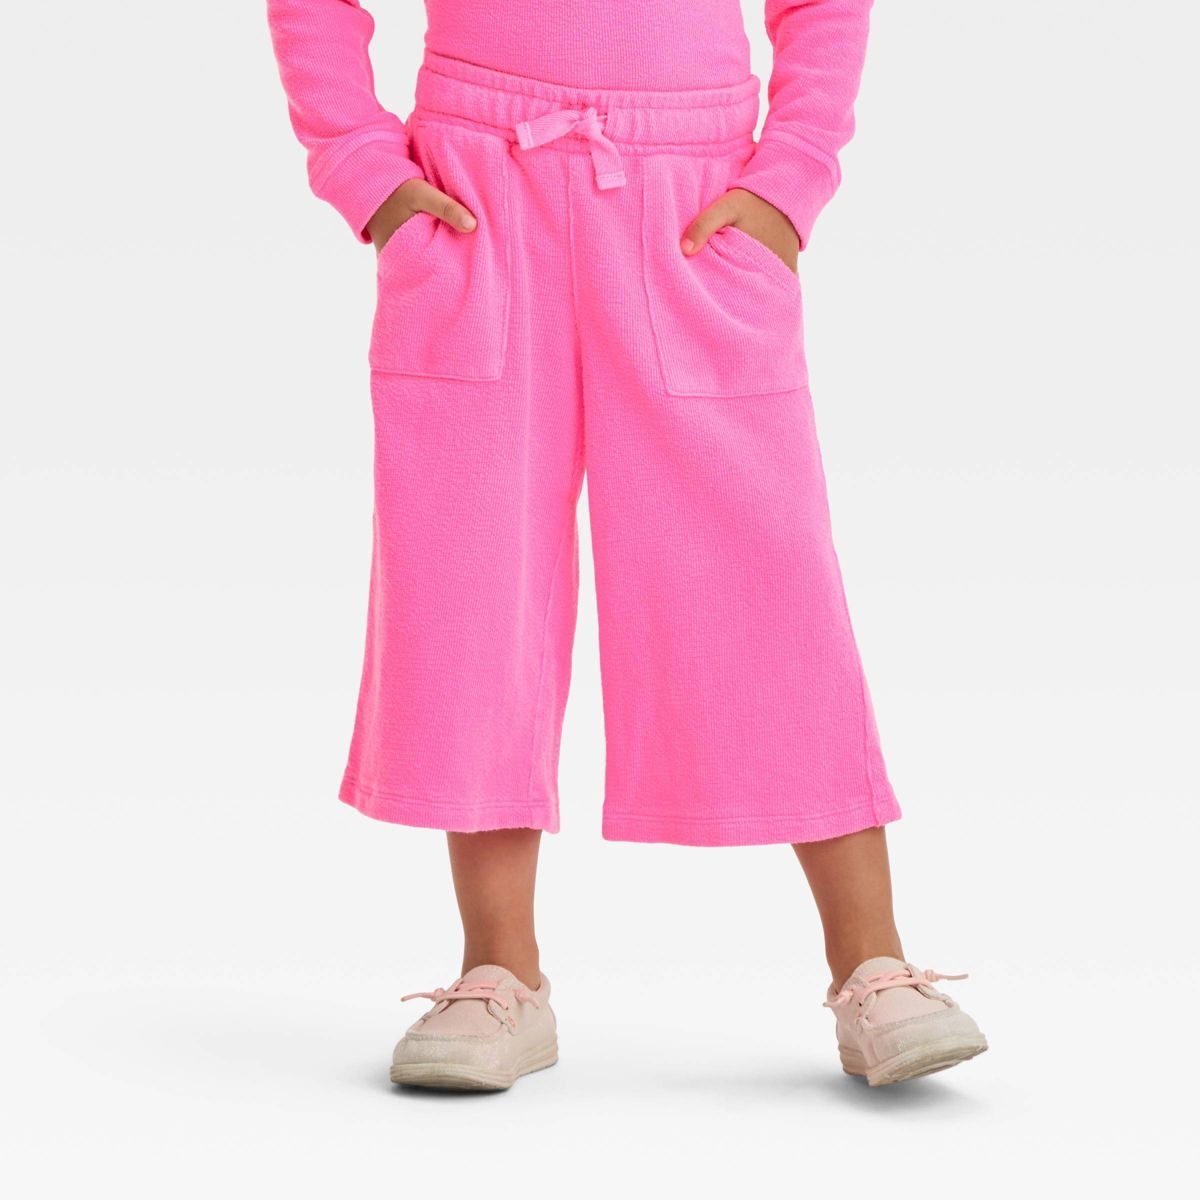 Toddler Girls' Pants - Cat & Jack™ Turquoise Green 3T | Target